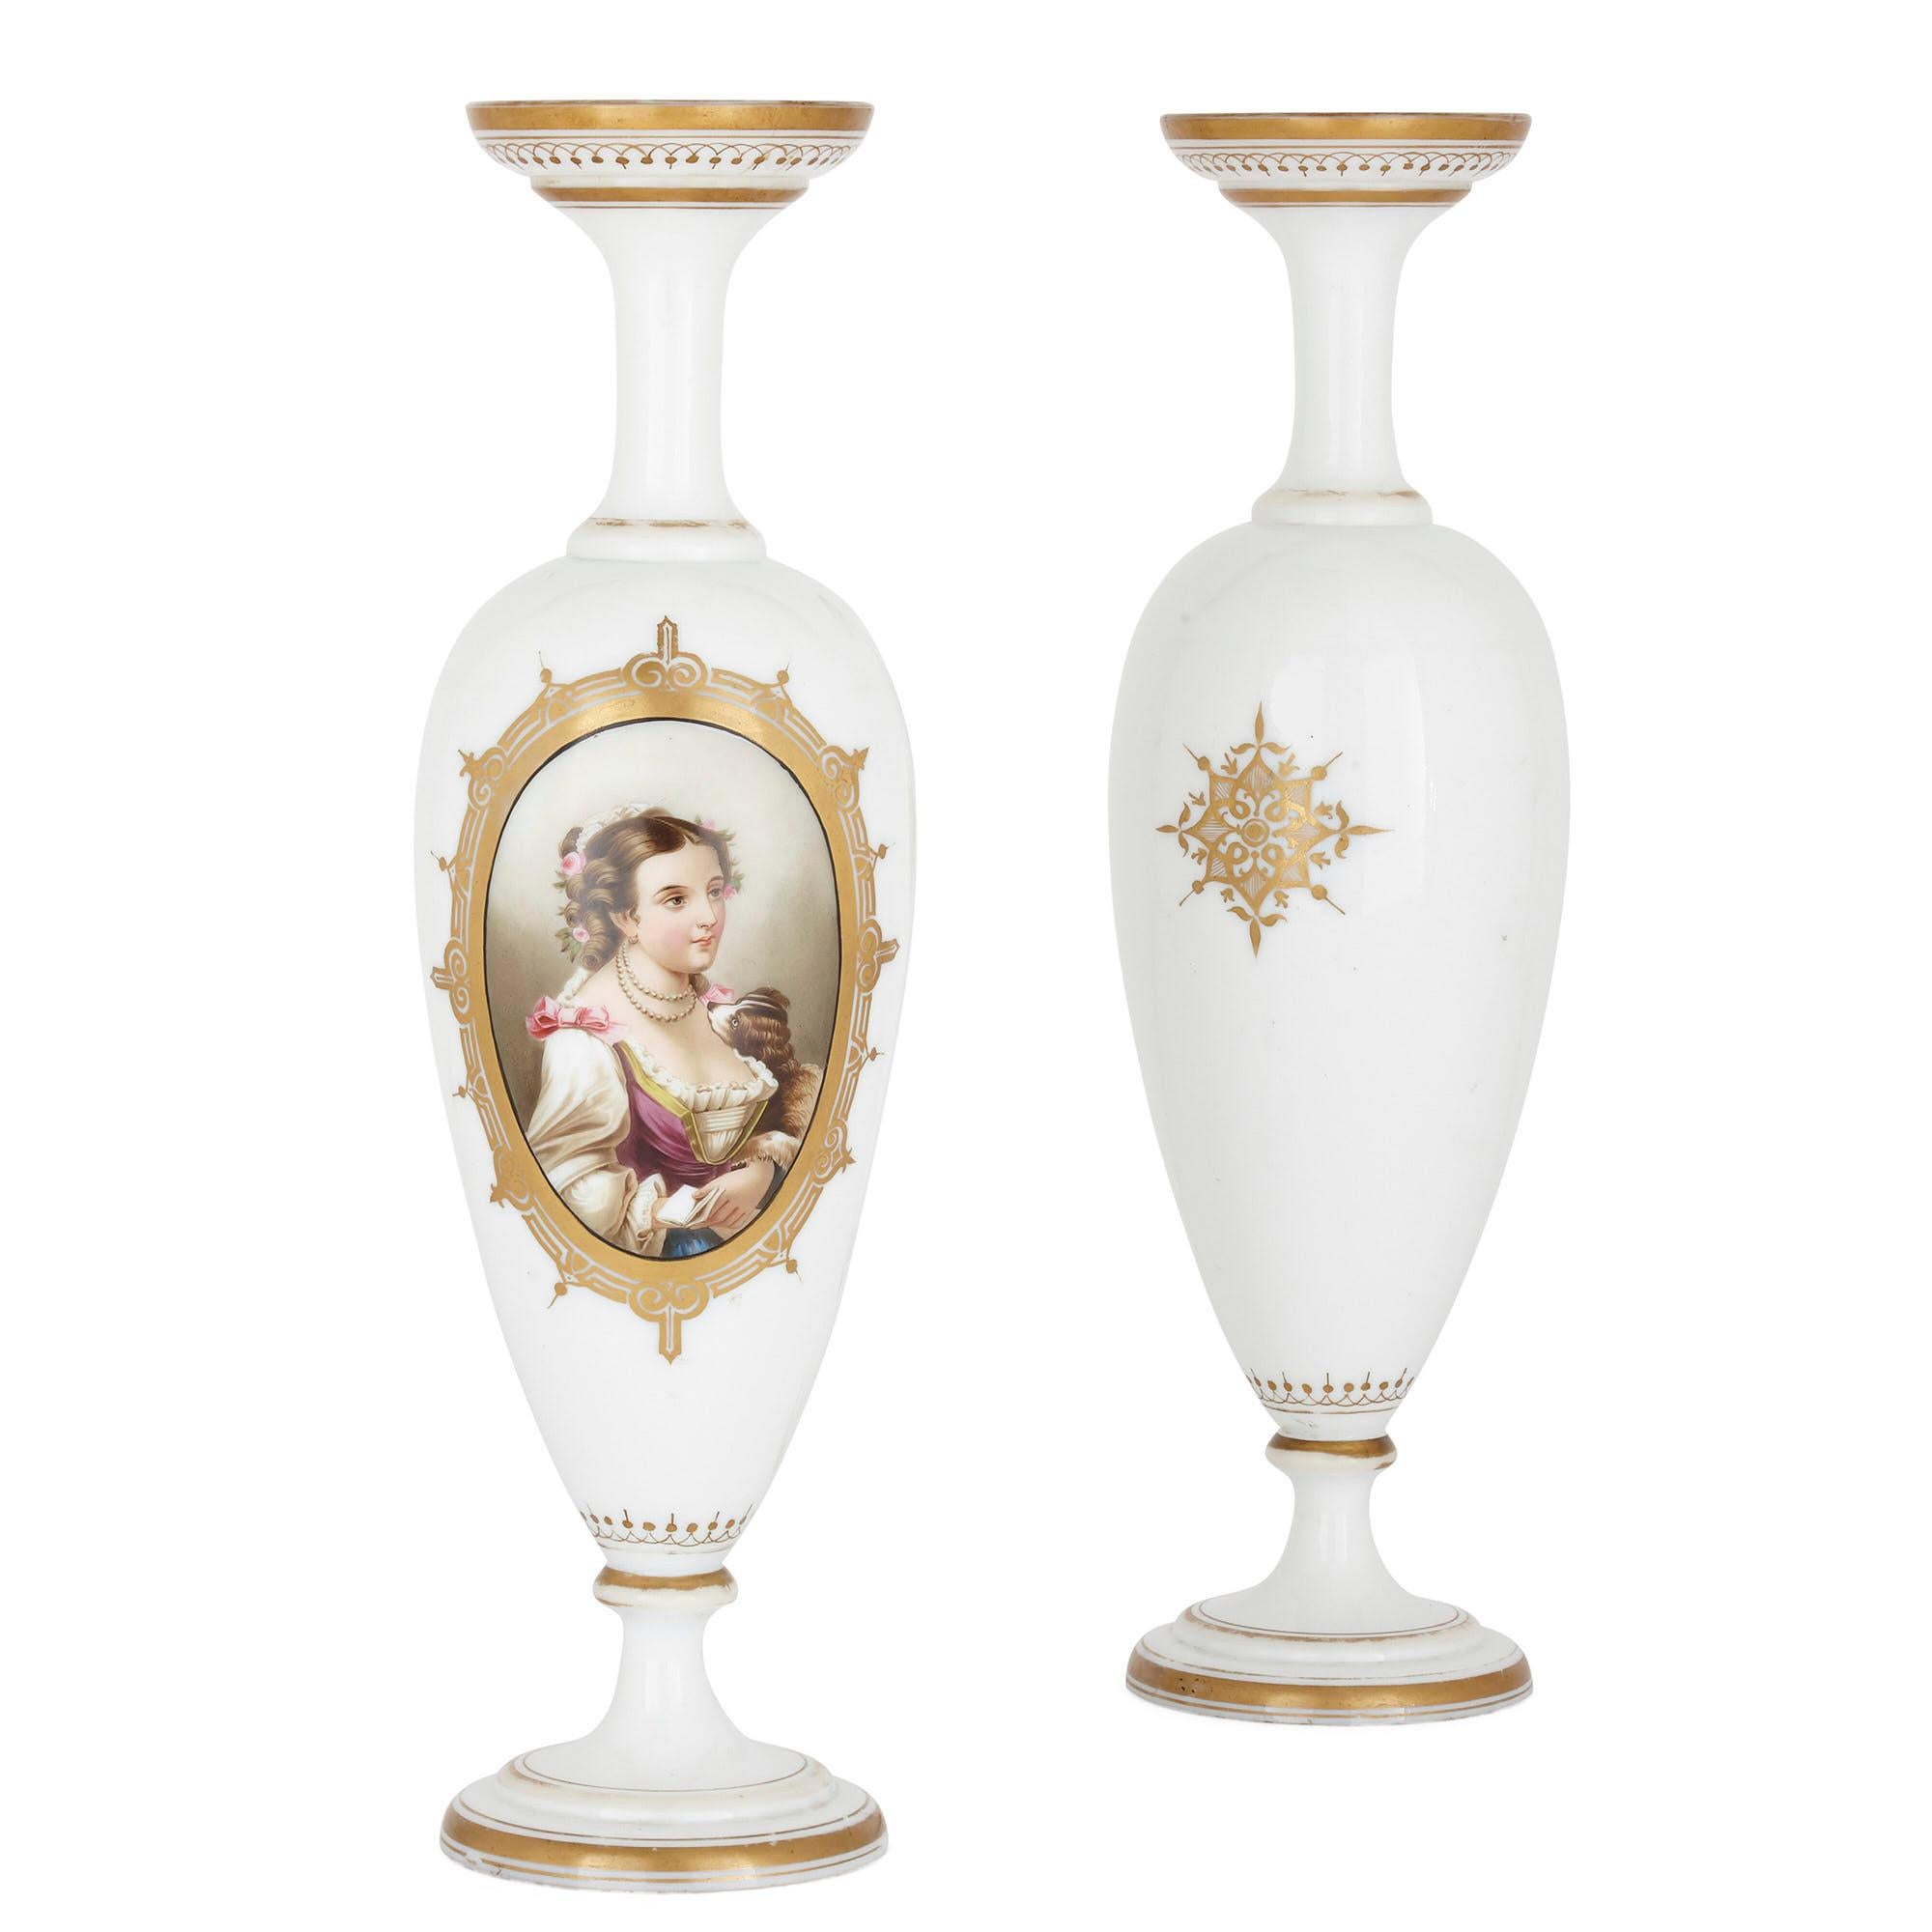 Paar mit Porträts bemalte französische Glasvasen
Französisch, Ende 19. Jahrhundert
Maße: Höhe 54cm, Durchmesser 15cm

Opalglas, d. h. undurchsichtiges Glas, oft mit einem Hauch von Farbe getönt, wird seit Jahrhunderten für seine elegante